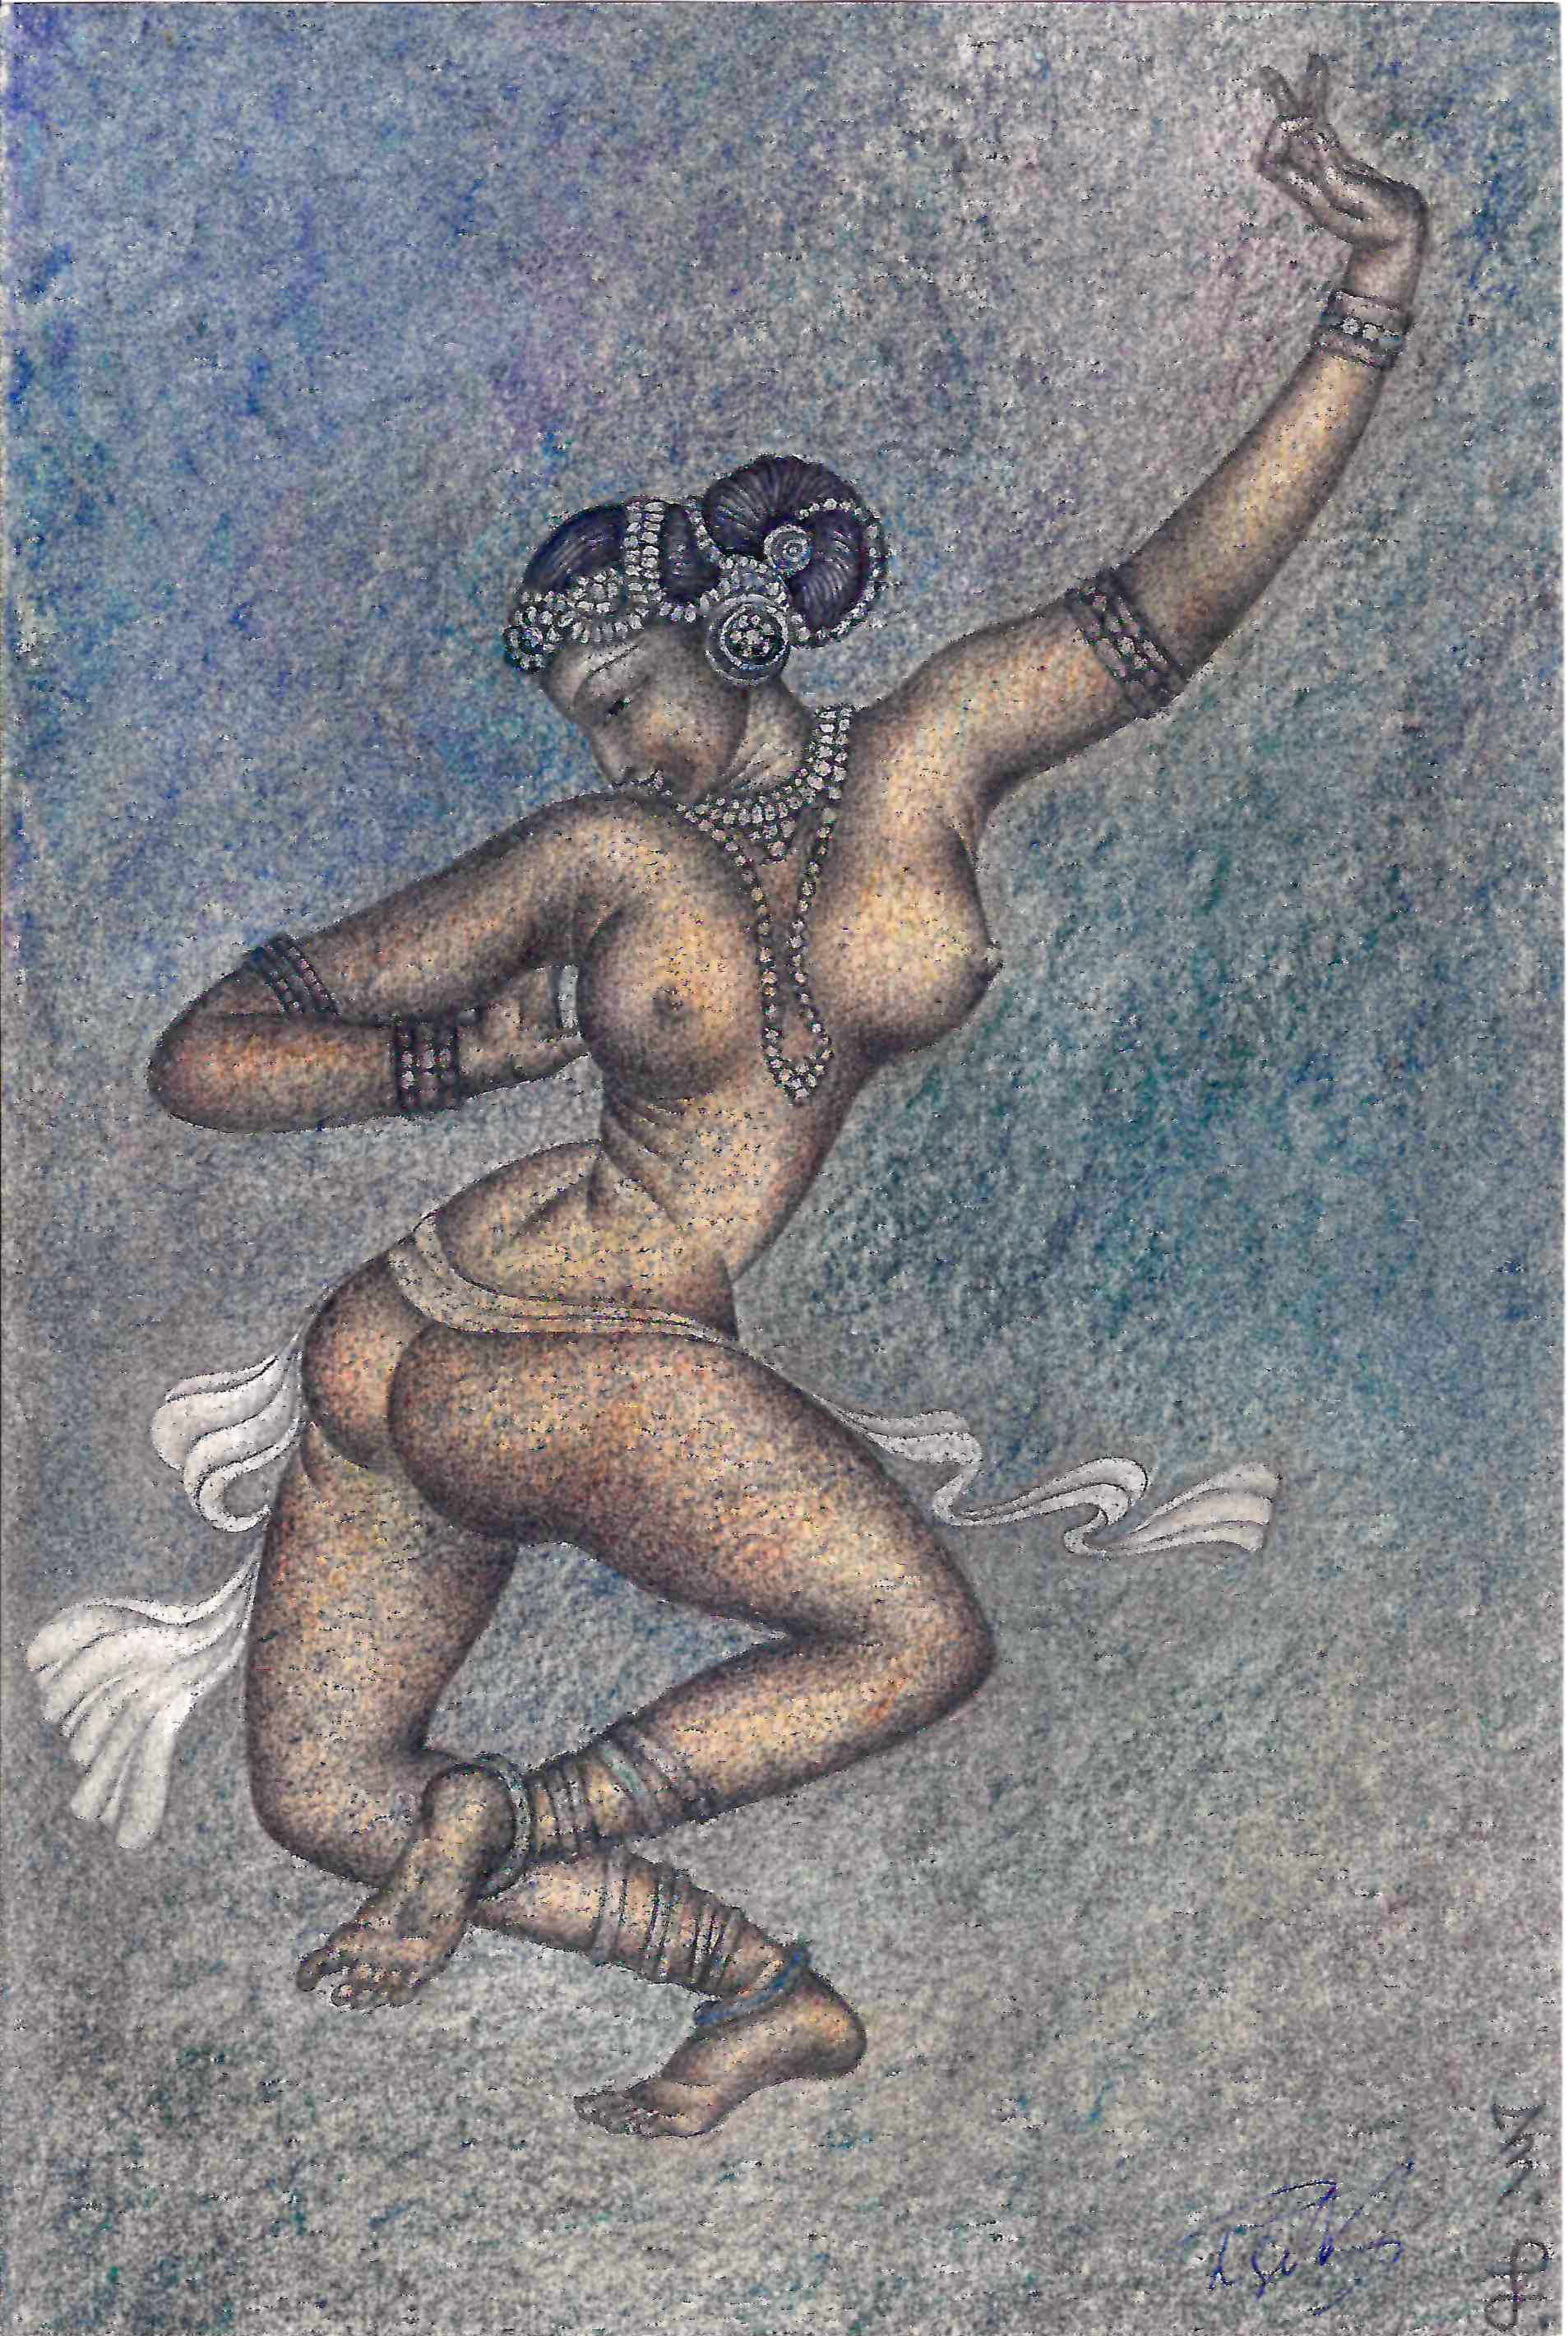 Рябов С. Парные рисунки (с эскизами) по фрескам из храма Брахадисвара в Танджавуре. 1973.